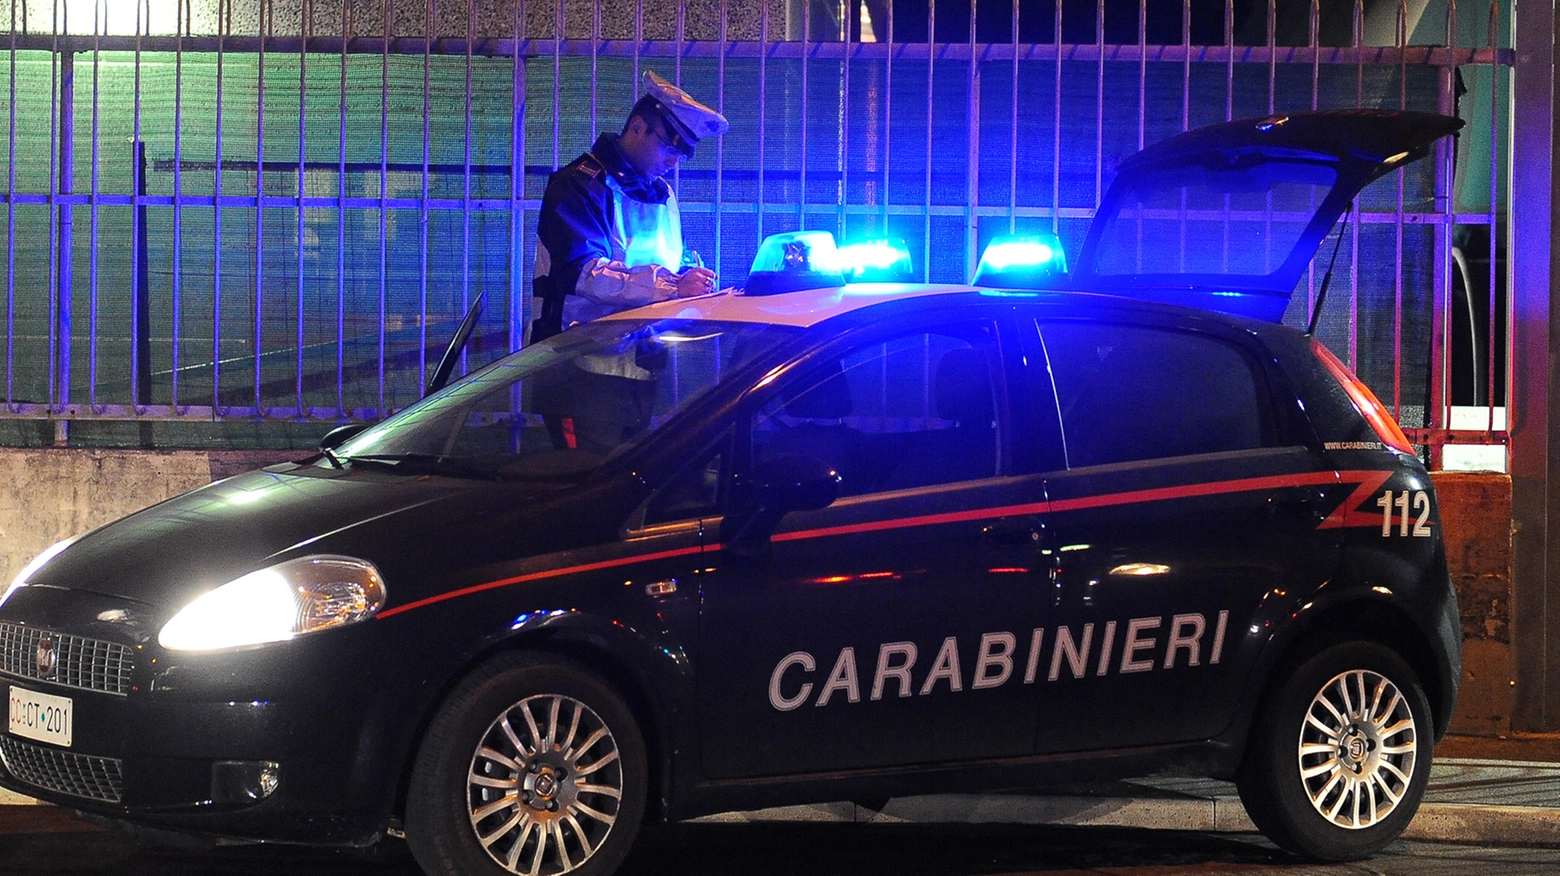 Intervento provvidenziale dei carabinieri